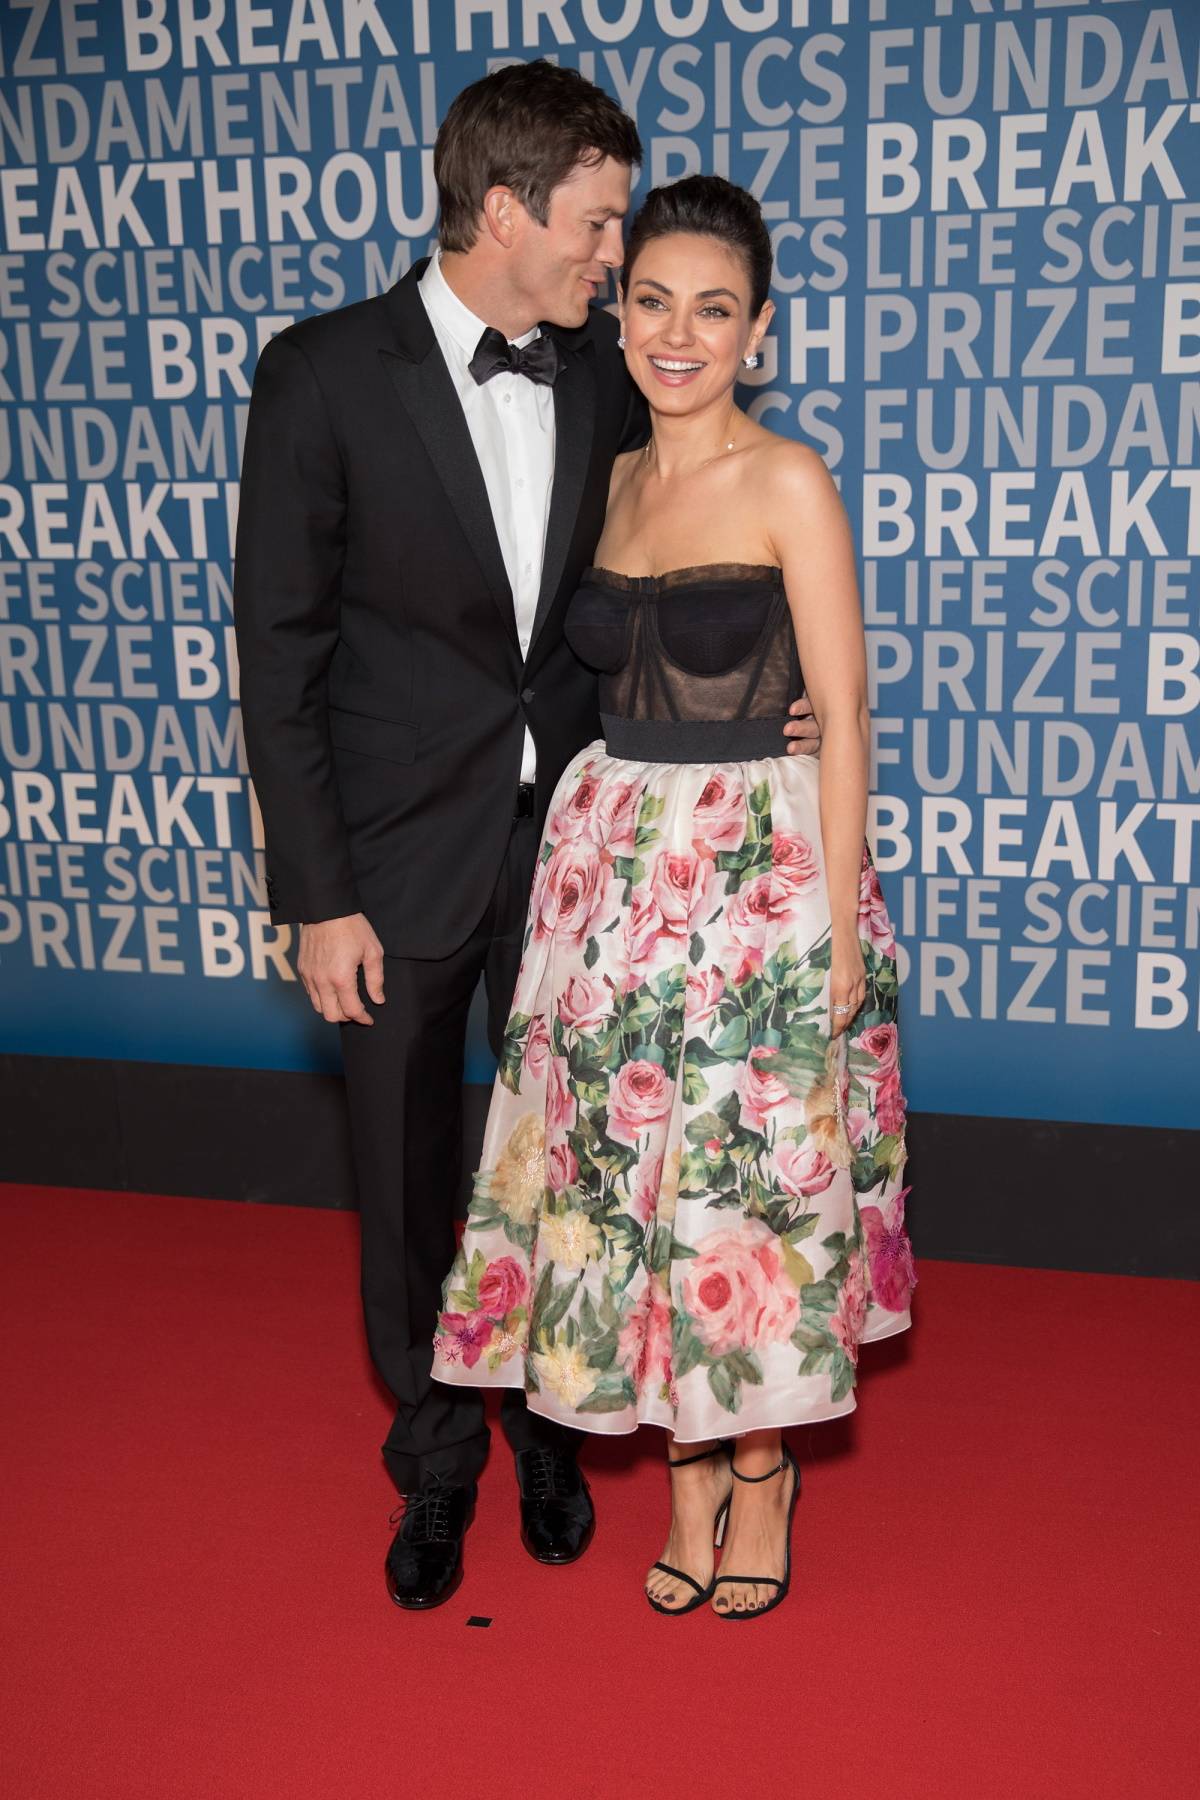 Ashton Kutcher i Mila Kunis na rozdaniu nagród Breakthrough Prize, Mountain View, 2017 rok 